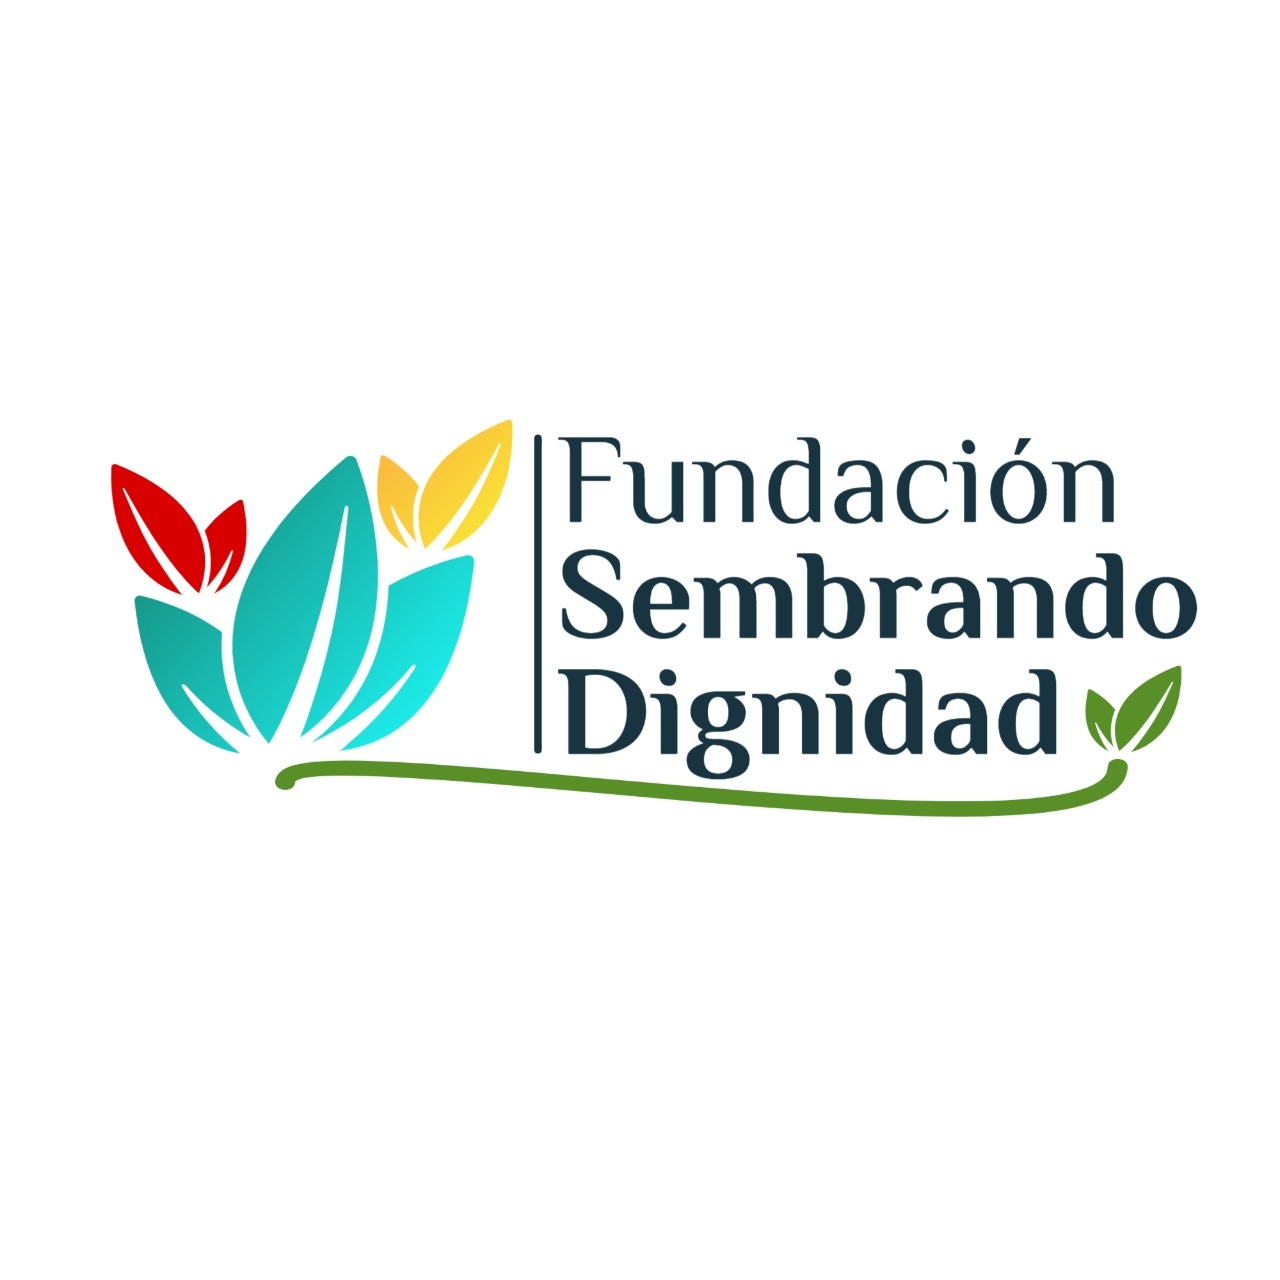 Fundacion Sembrando Dignidad